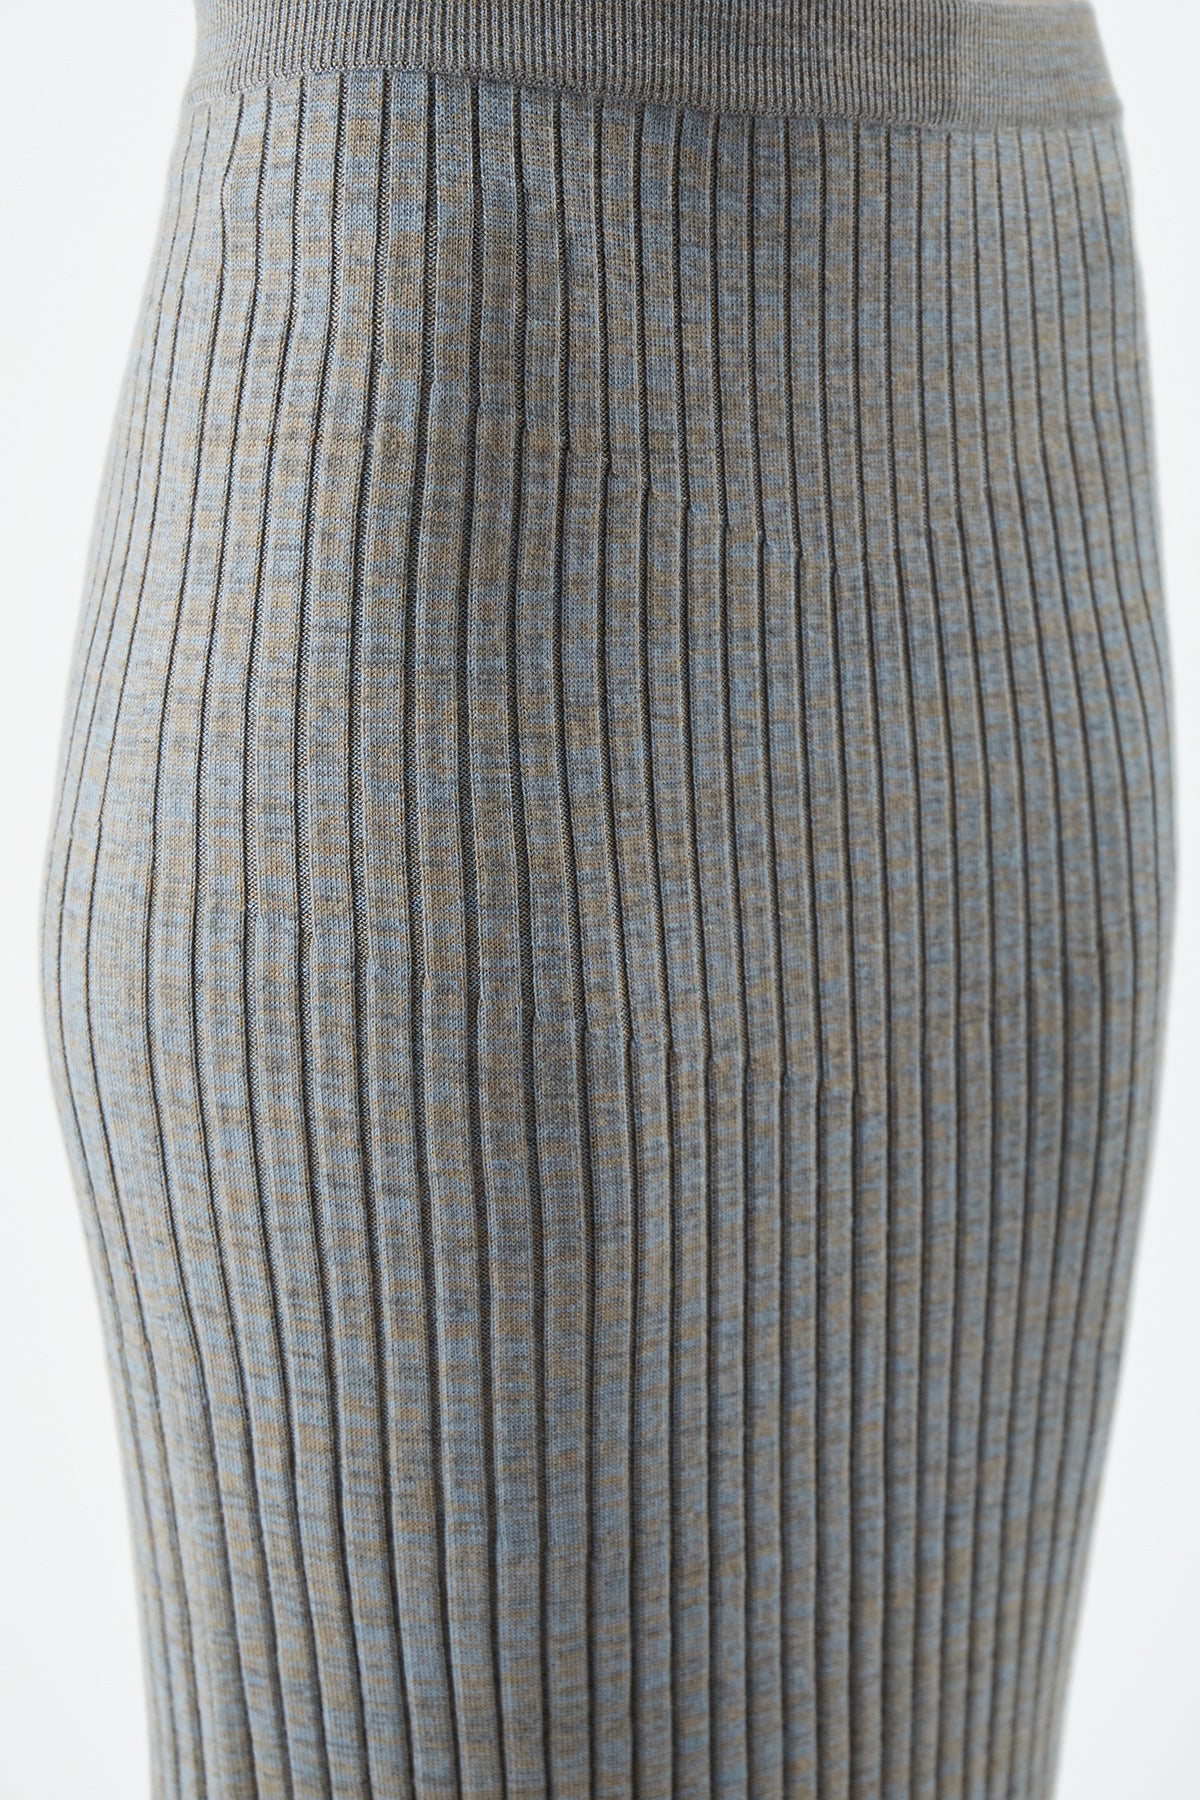 Conti Skirt in Aran Cashmere